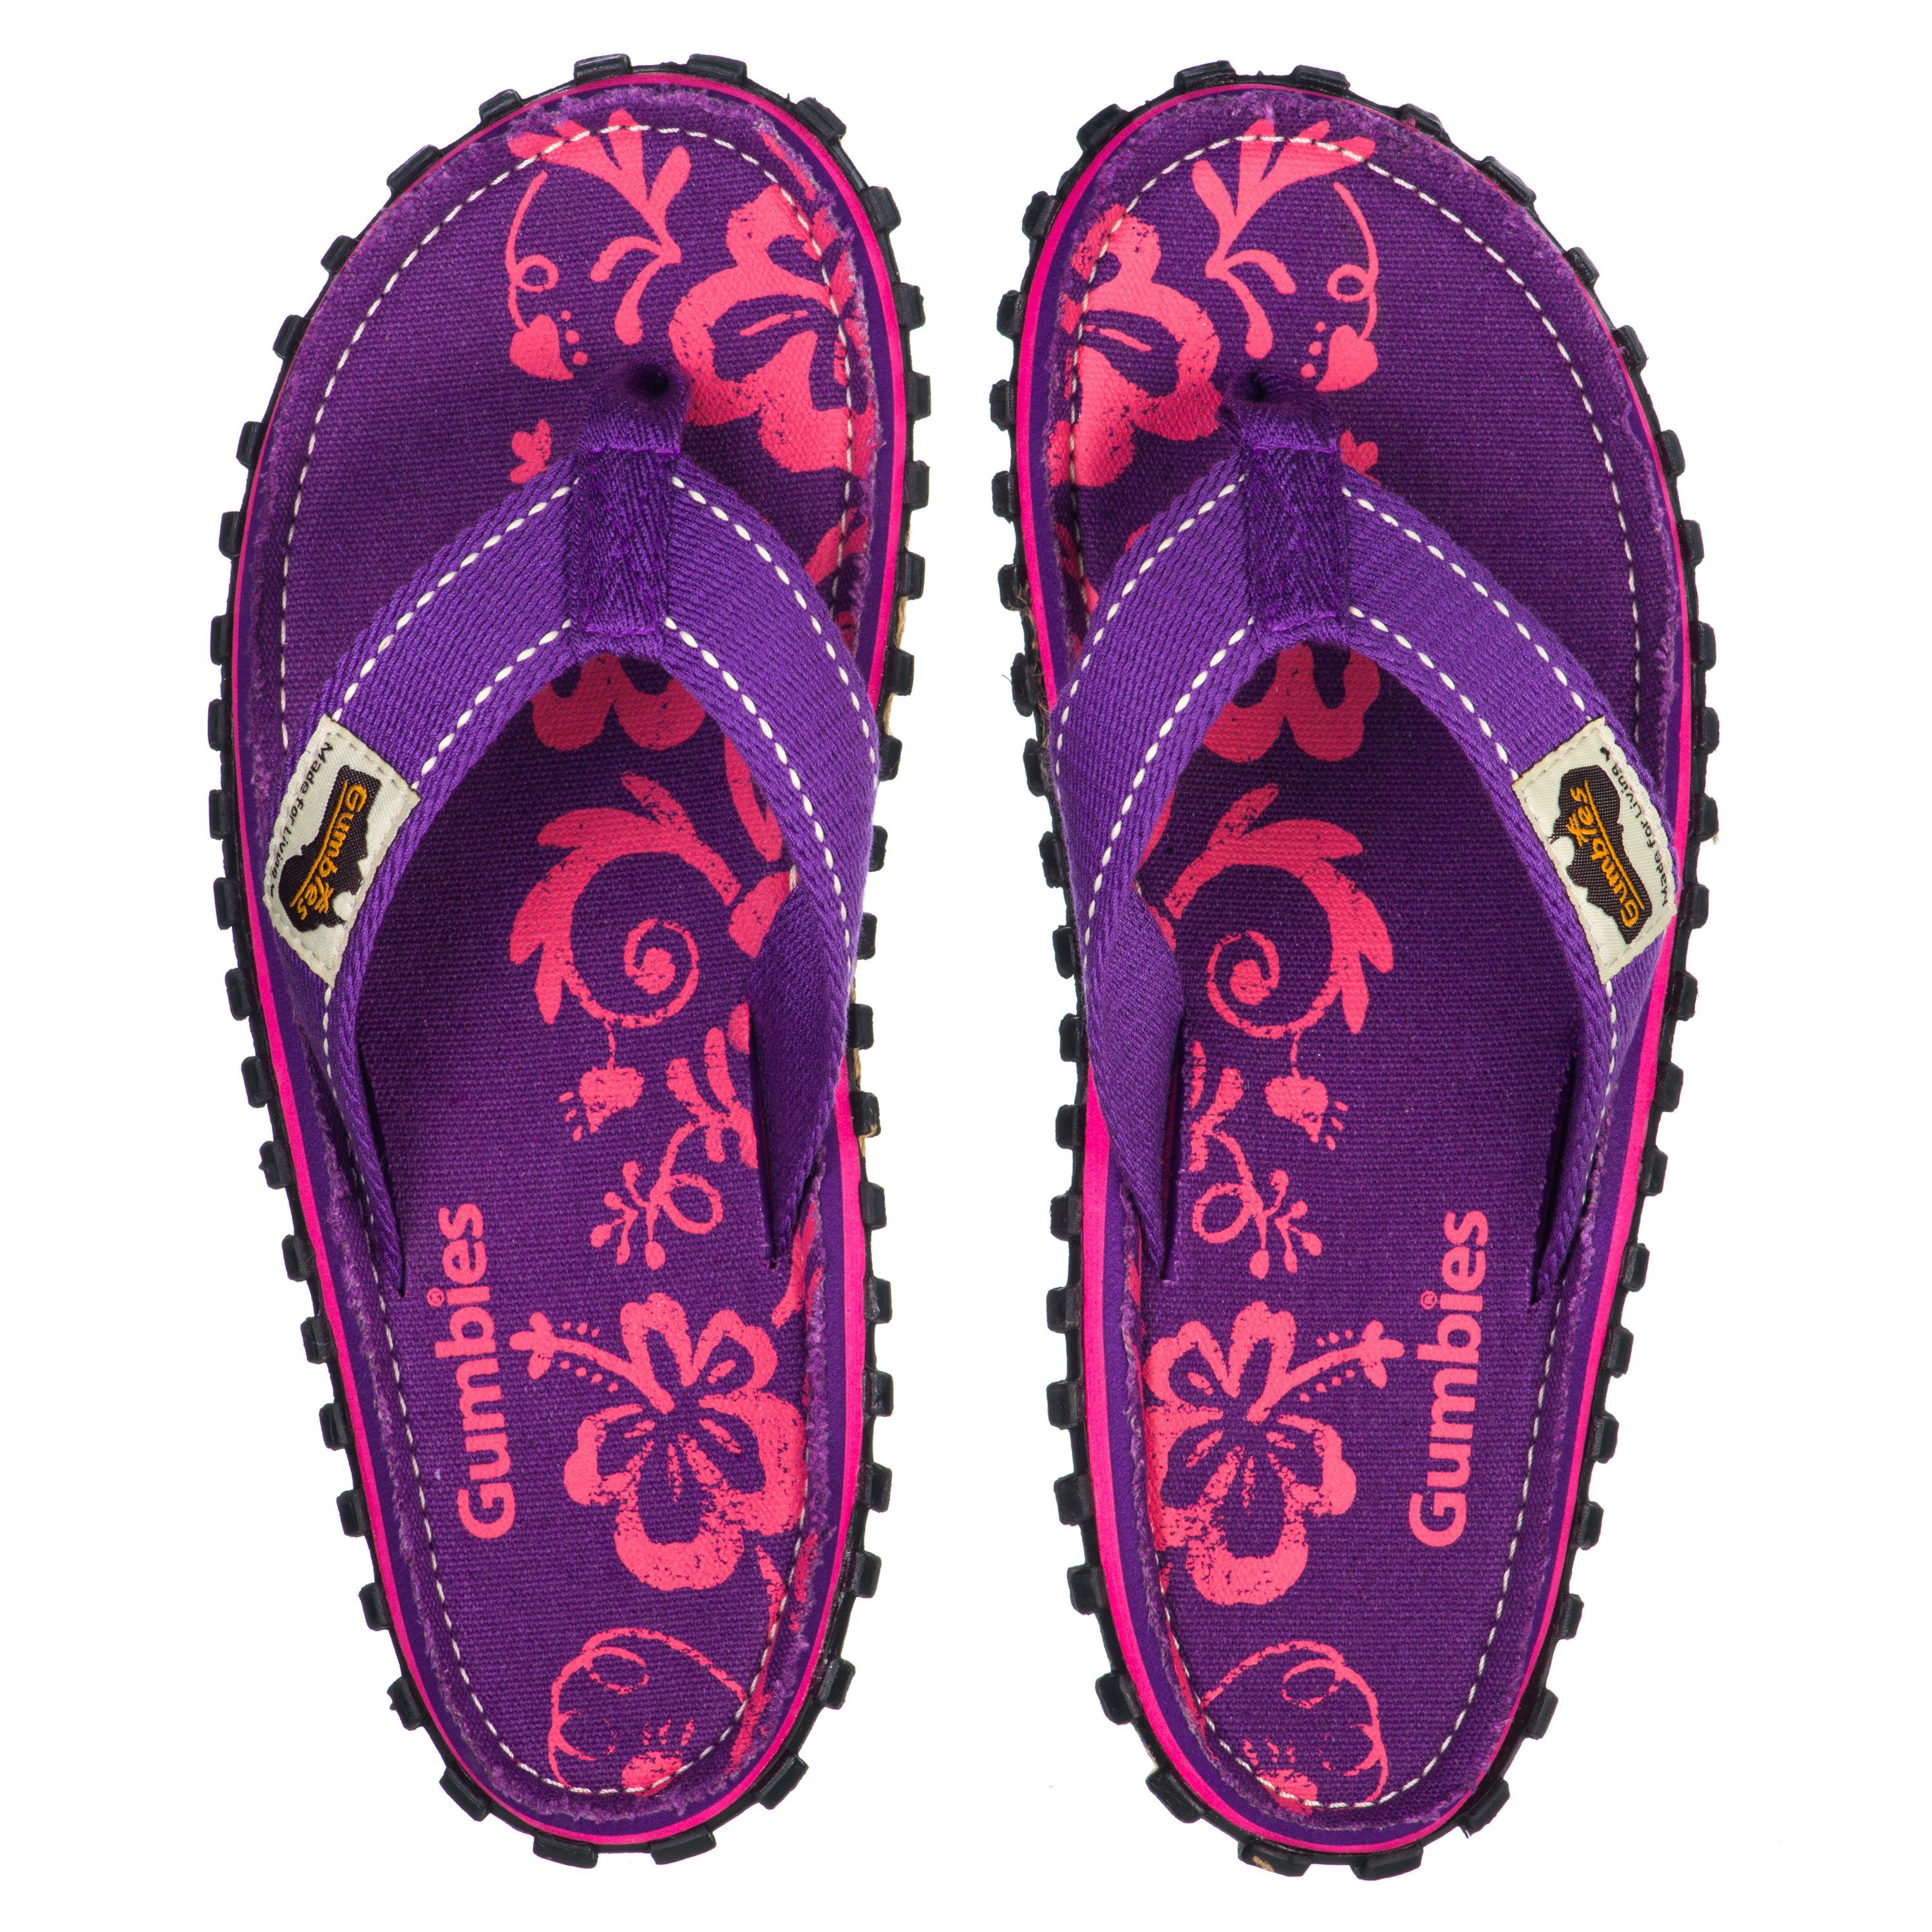 Gumbies Original Kids in Purple »in Hibiscus Designs« recycelten Materialien aus farbenfrohen T-Strap-Zehentrenner